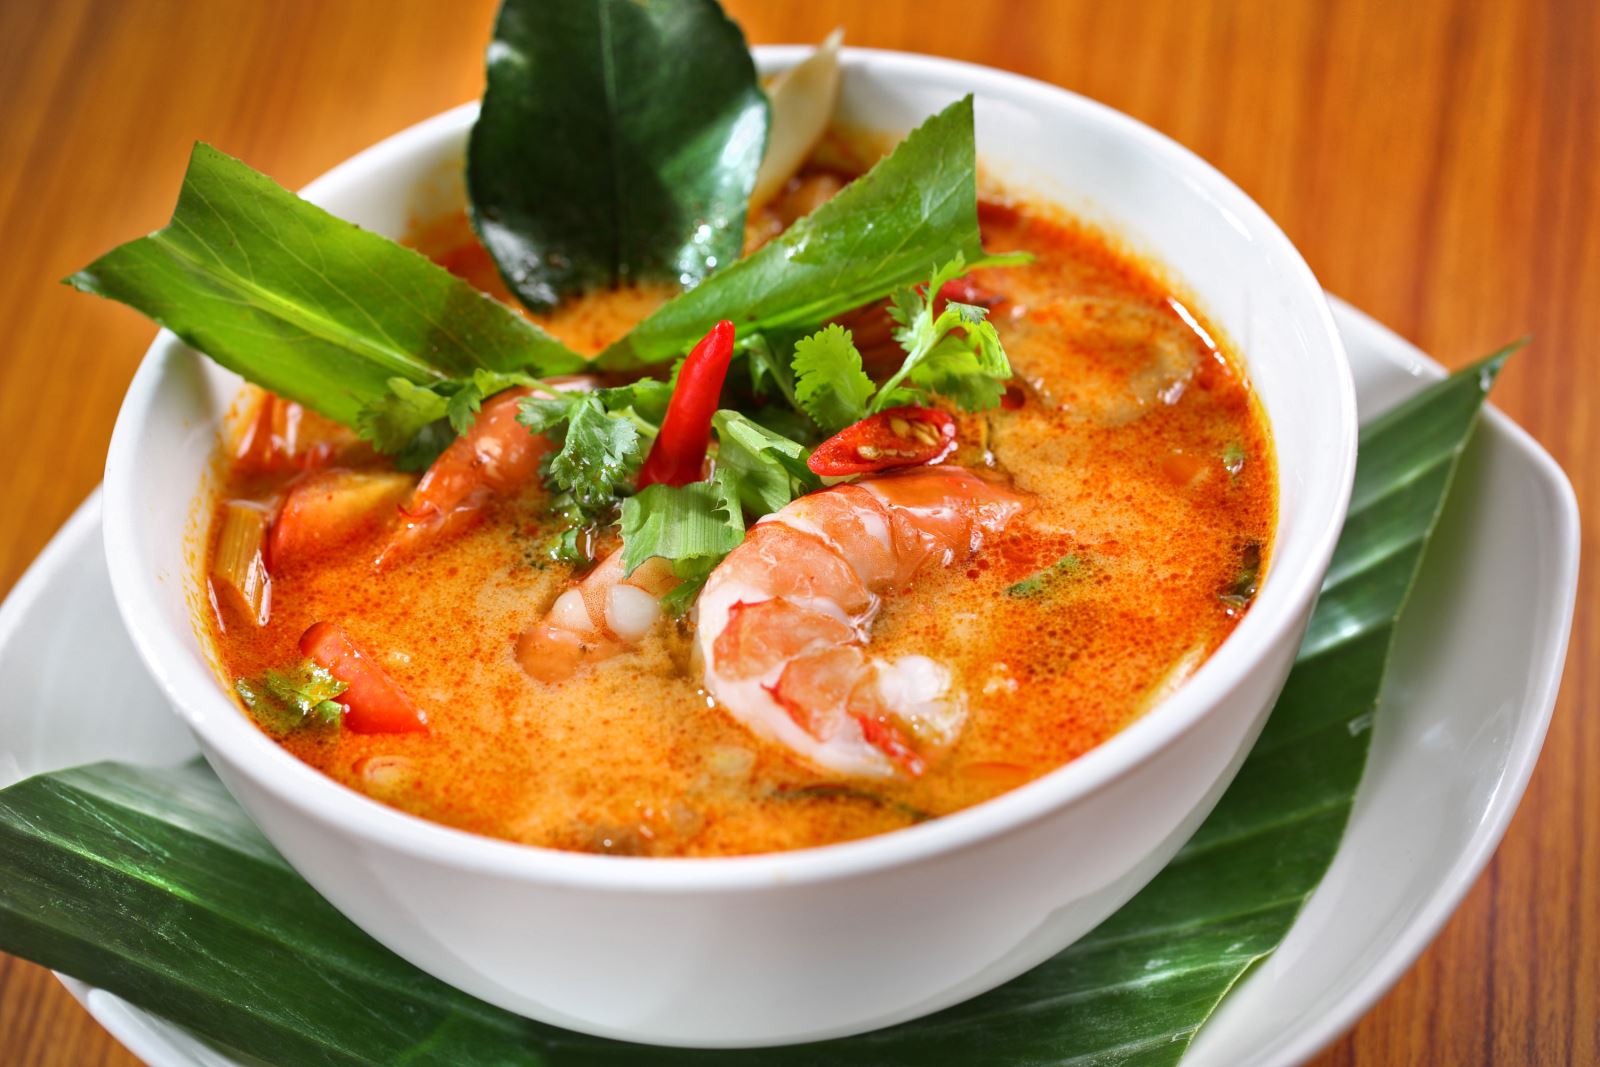 6 Rekomendasi Makanan Yang Wajib Dicoba Saat Berada di Thailand